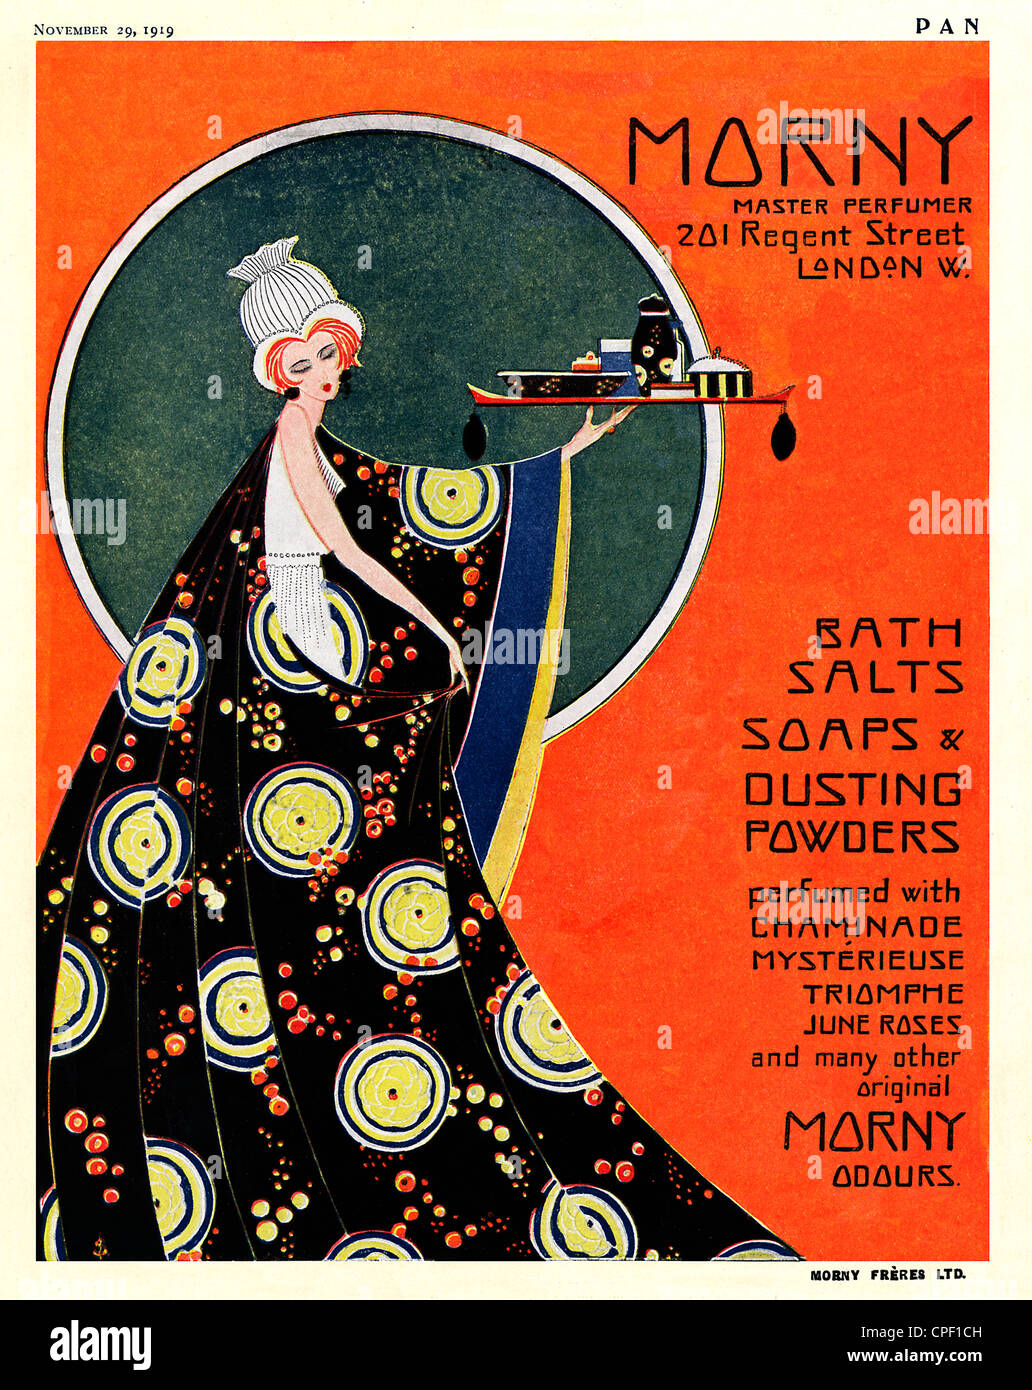 Morny profumo, 1919 Art Deco magazine annuncio pubblicitario per il maestro profumiere con base a Londra in Regent Street Foto Stock